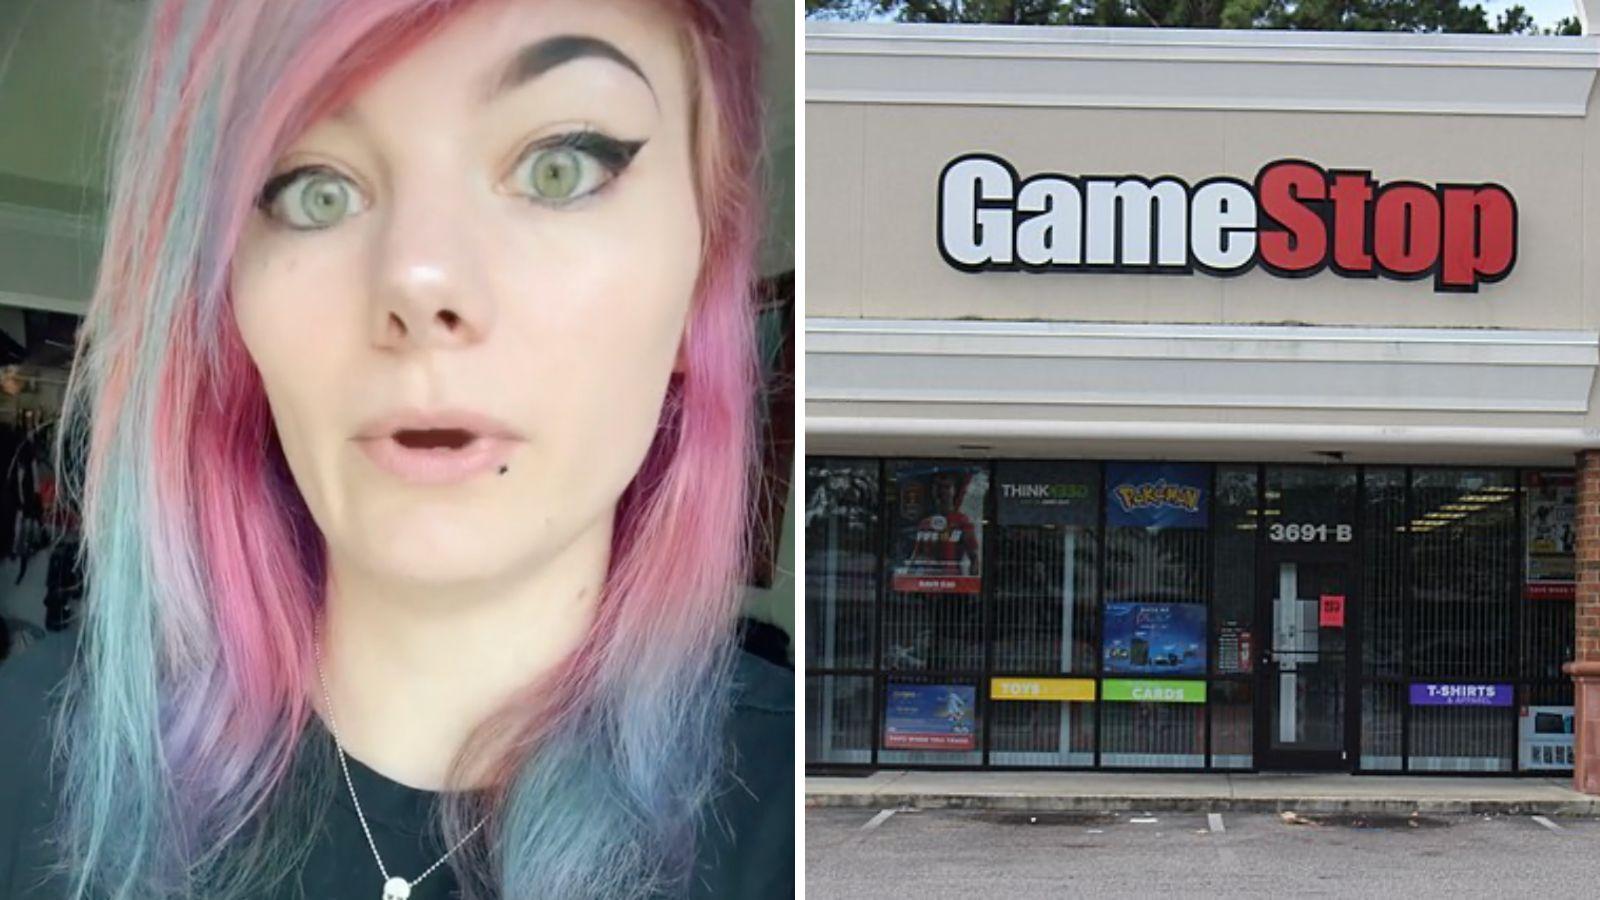 GameStop worker mortified as customer poops in store